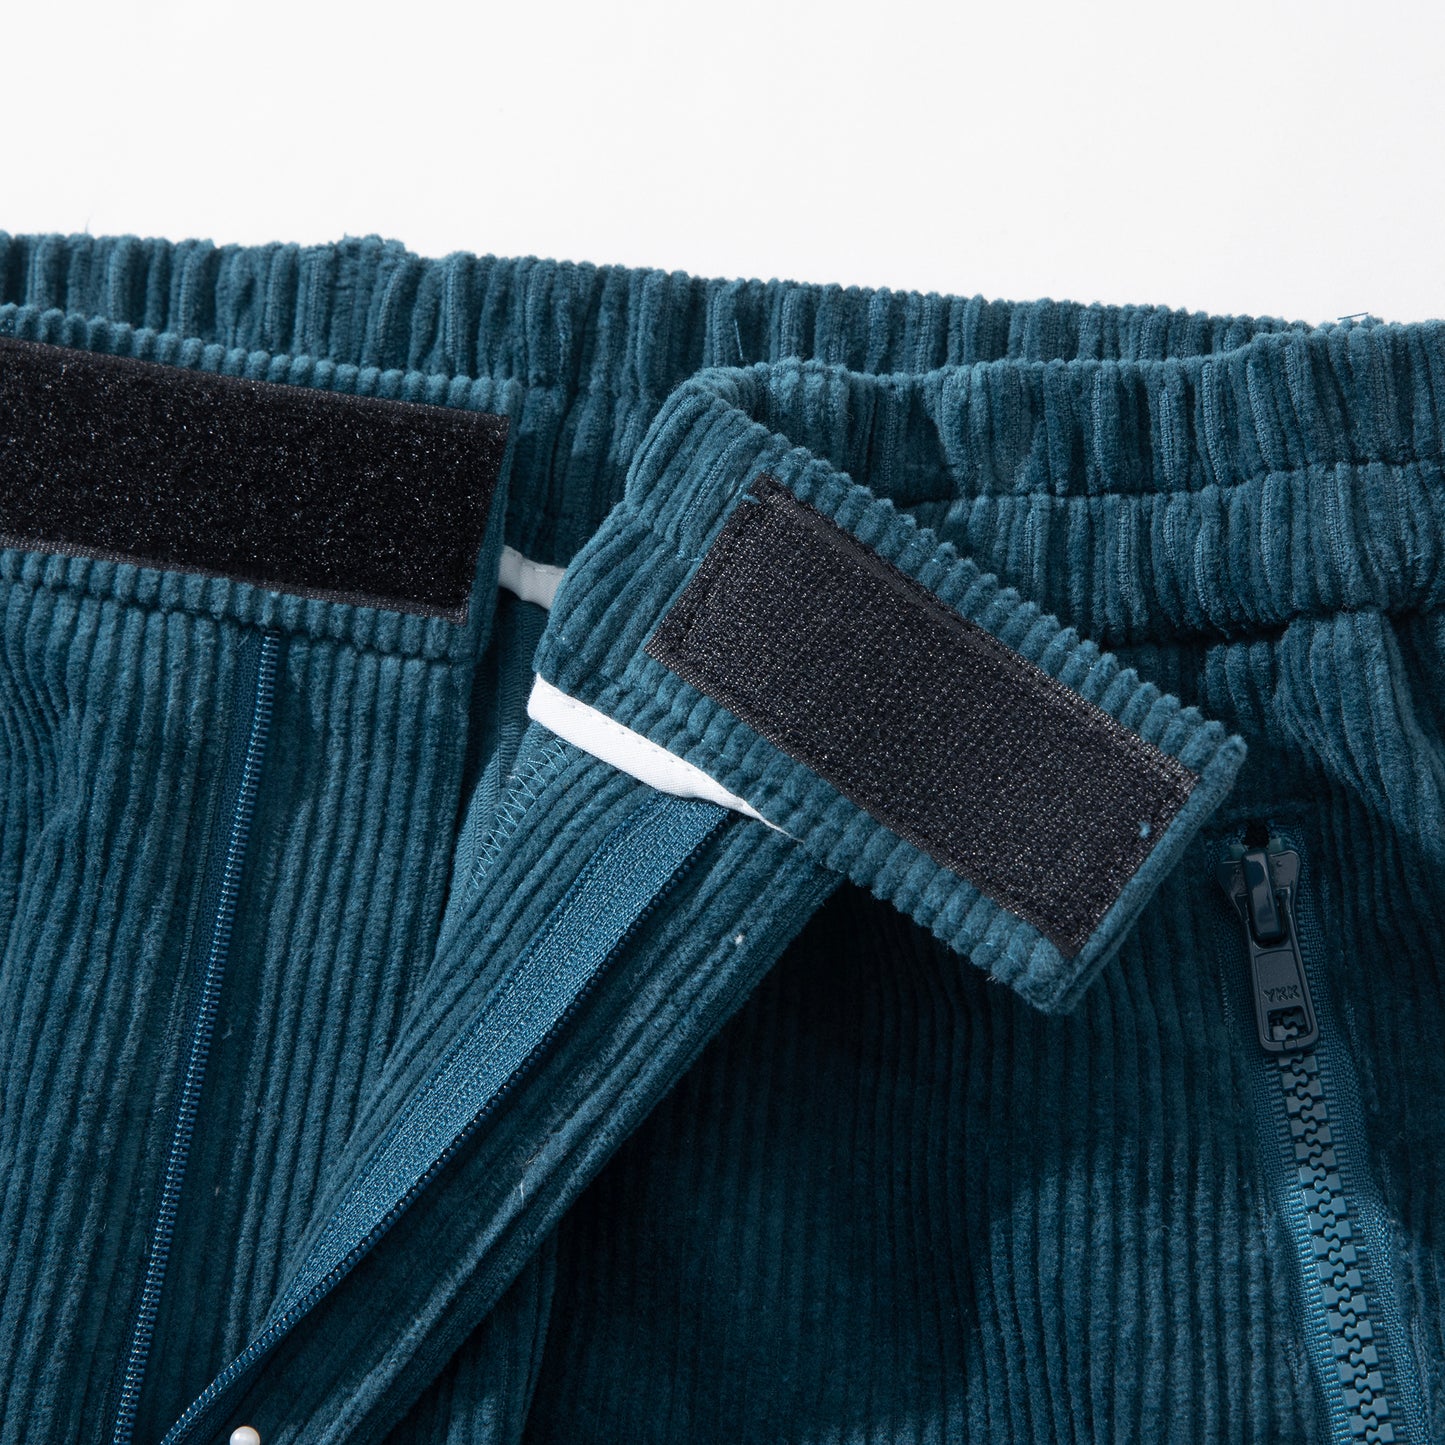 Pants Velvet Series model 4 dark blue